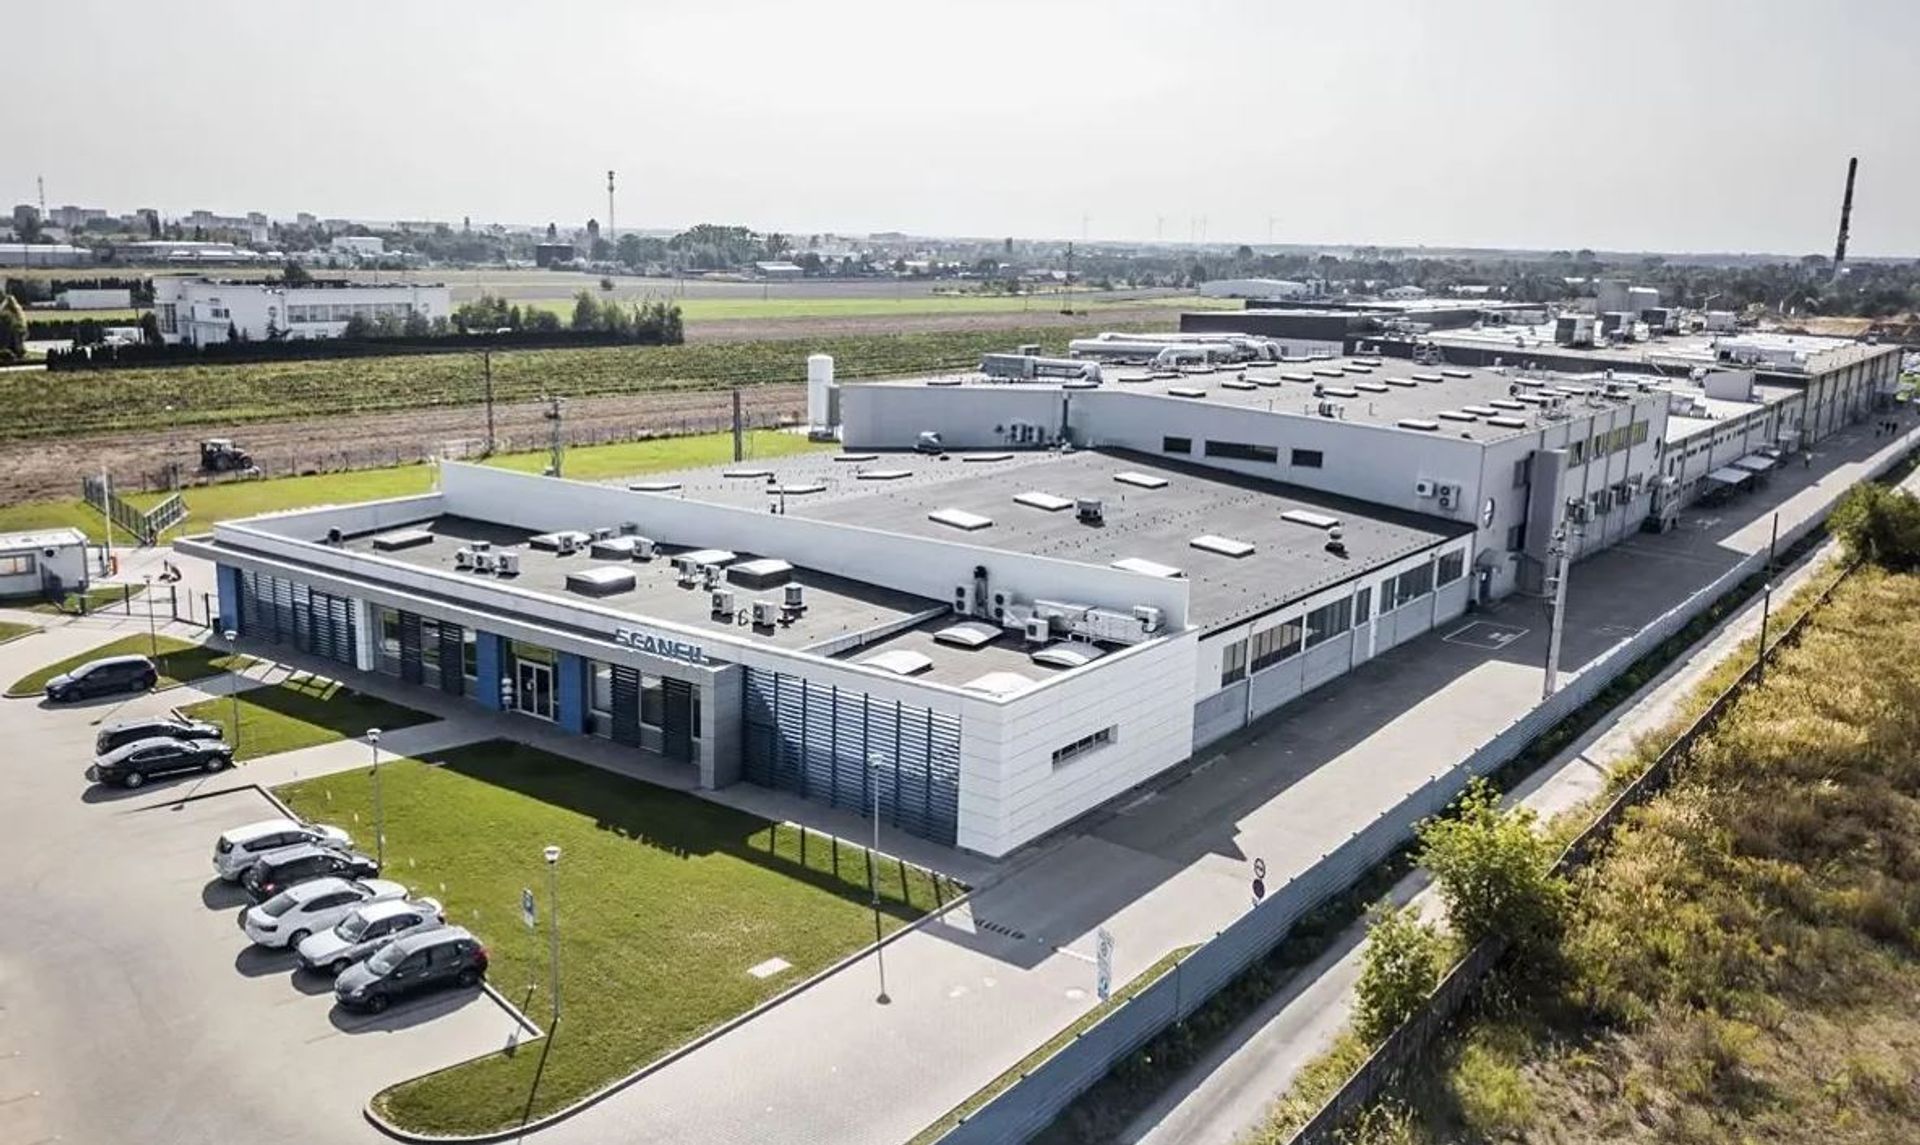 Fińska firma Scanfil po raz kolejny rozbuduje swoją polską fabrykę w Sieradzu